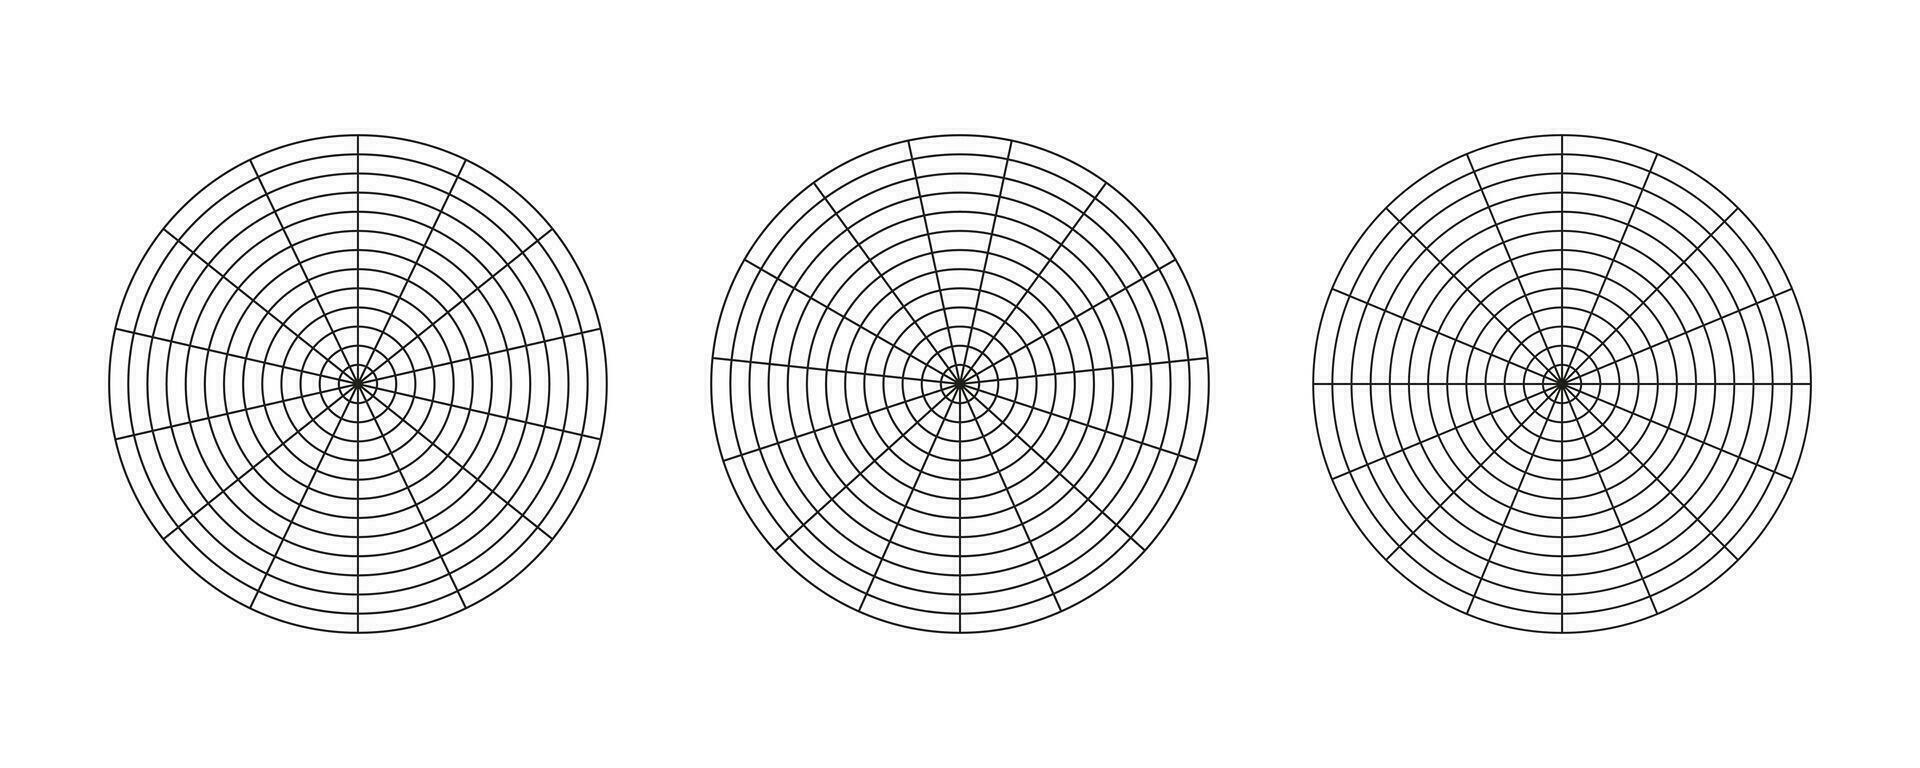 wiel van leven Sjablonen. coaching gereedschap voor visualiseren. cirkel diagrammen van leven stijl evenwicht. polair roosters met segmenten en concentrisch cirkels. blanco's van polair diagram papier. vector illustratie.